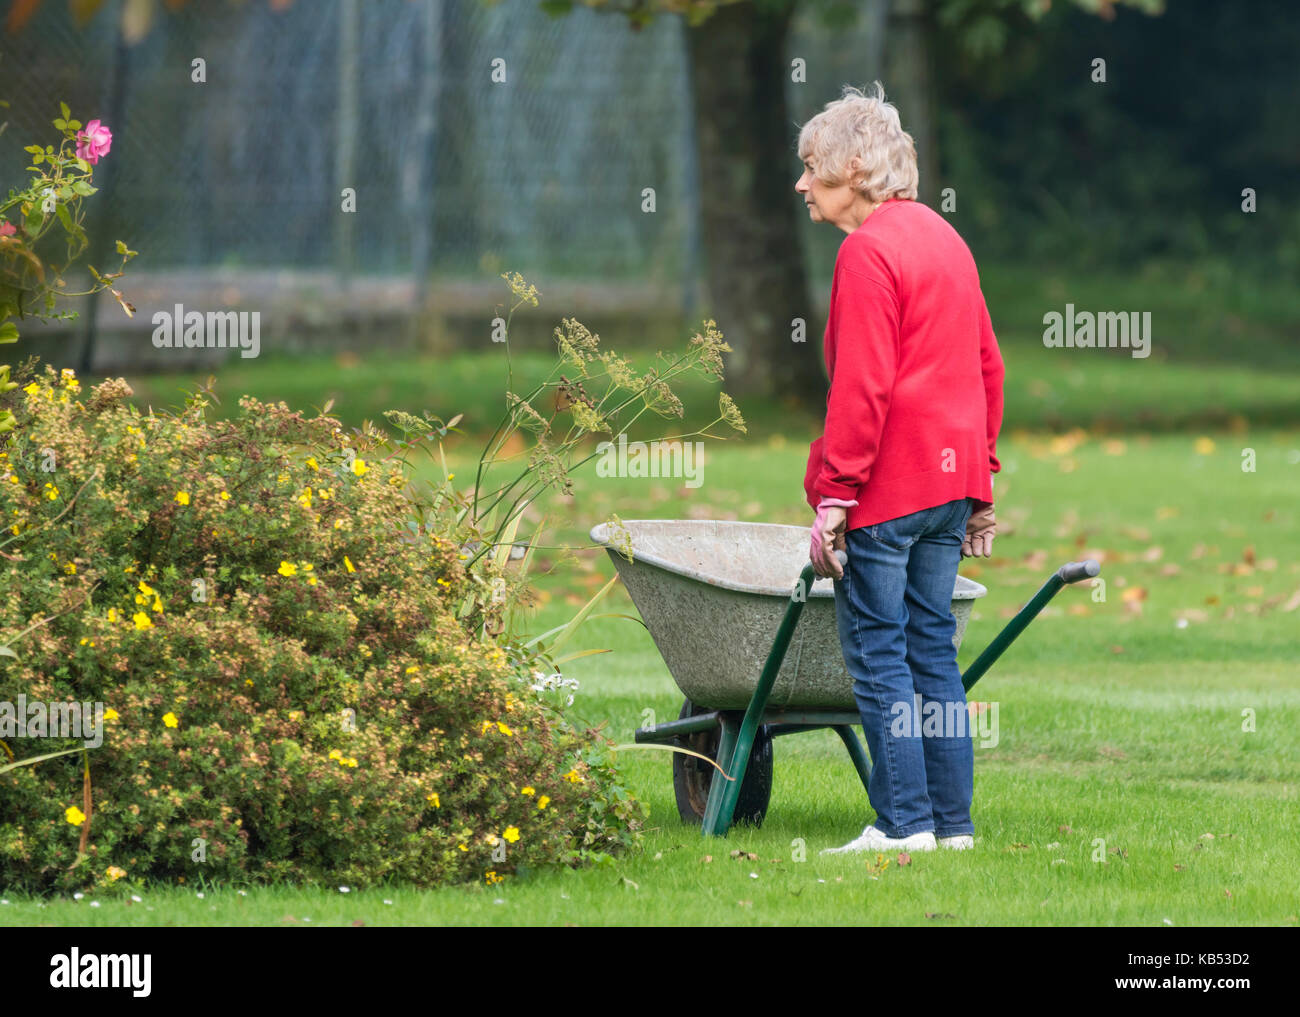 Ancianas jardinero empujando una carretilla. Vieja dama senior de jardinería. Foto de stock